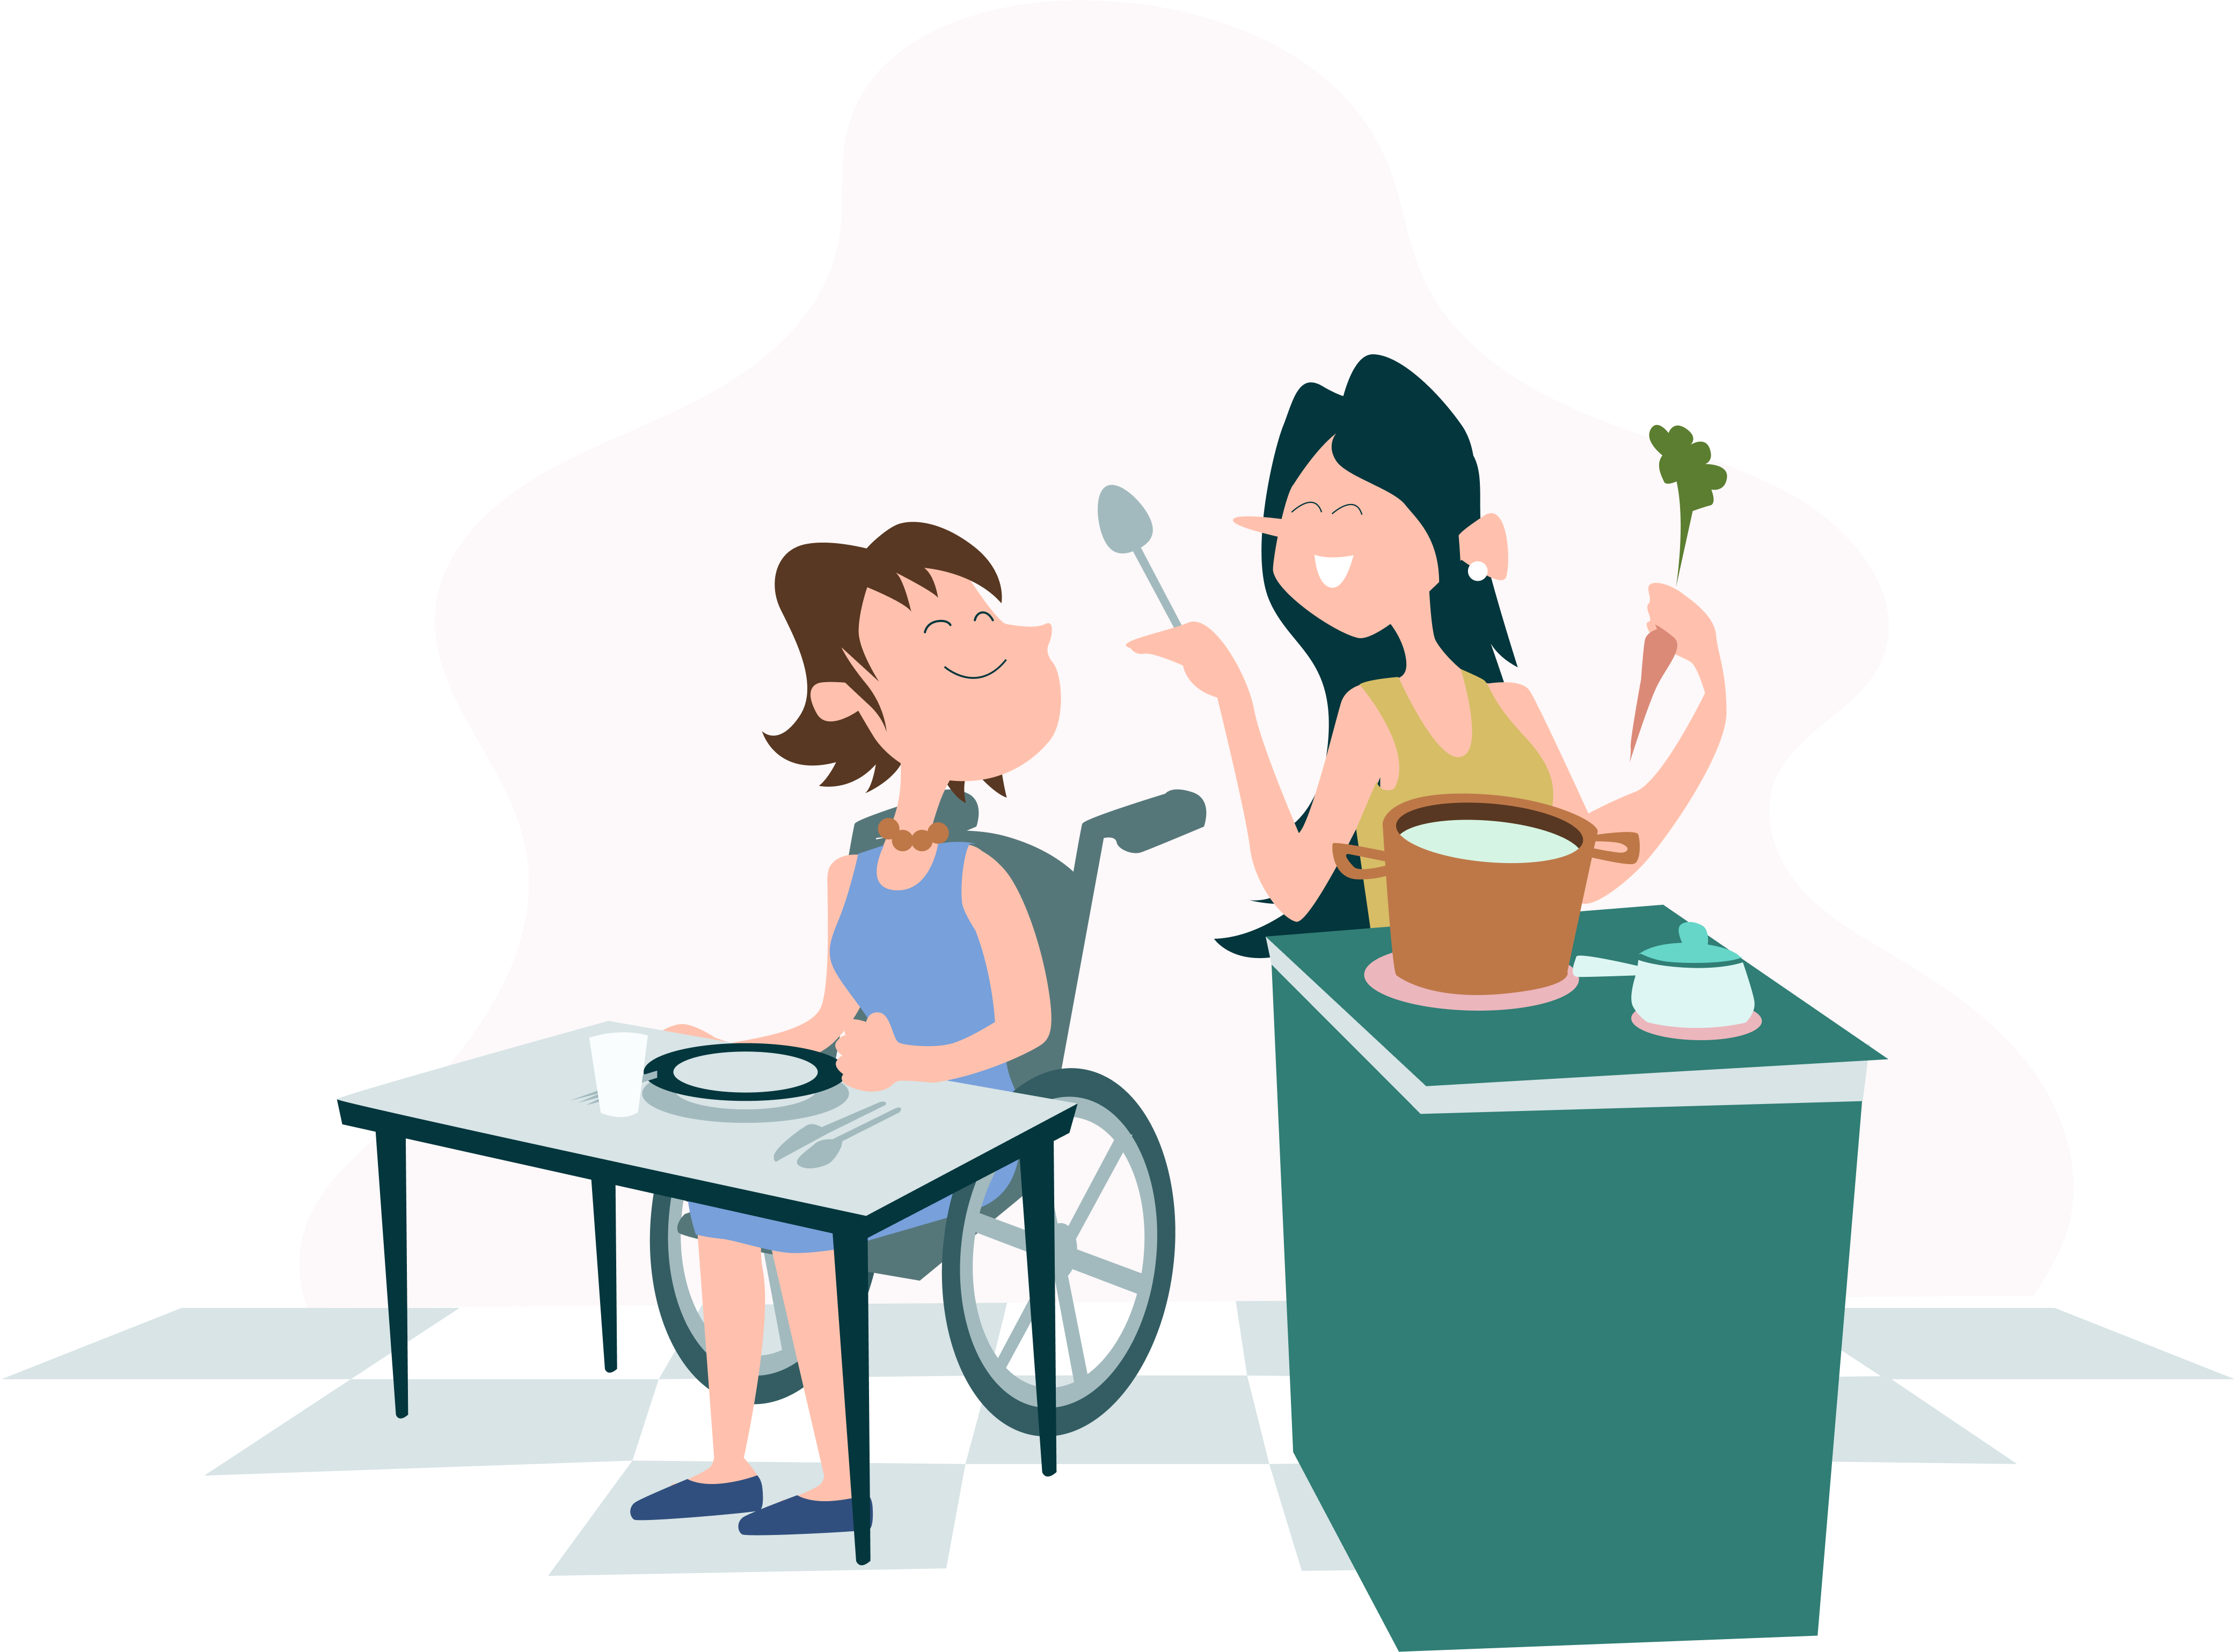 helpper illustratie van vrouw die kookt voor andere vrouw in rolstoel